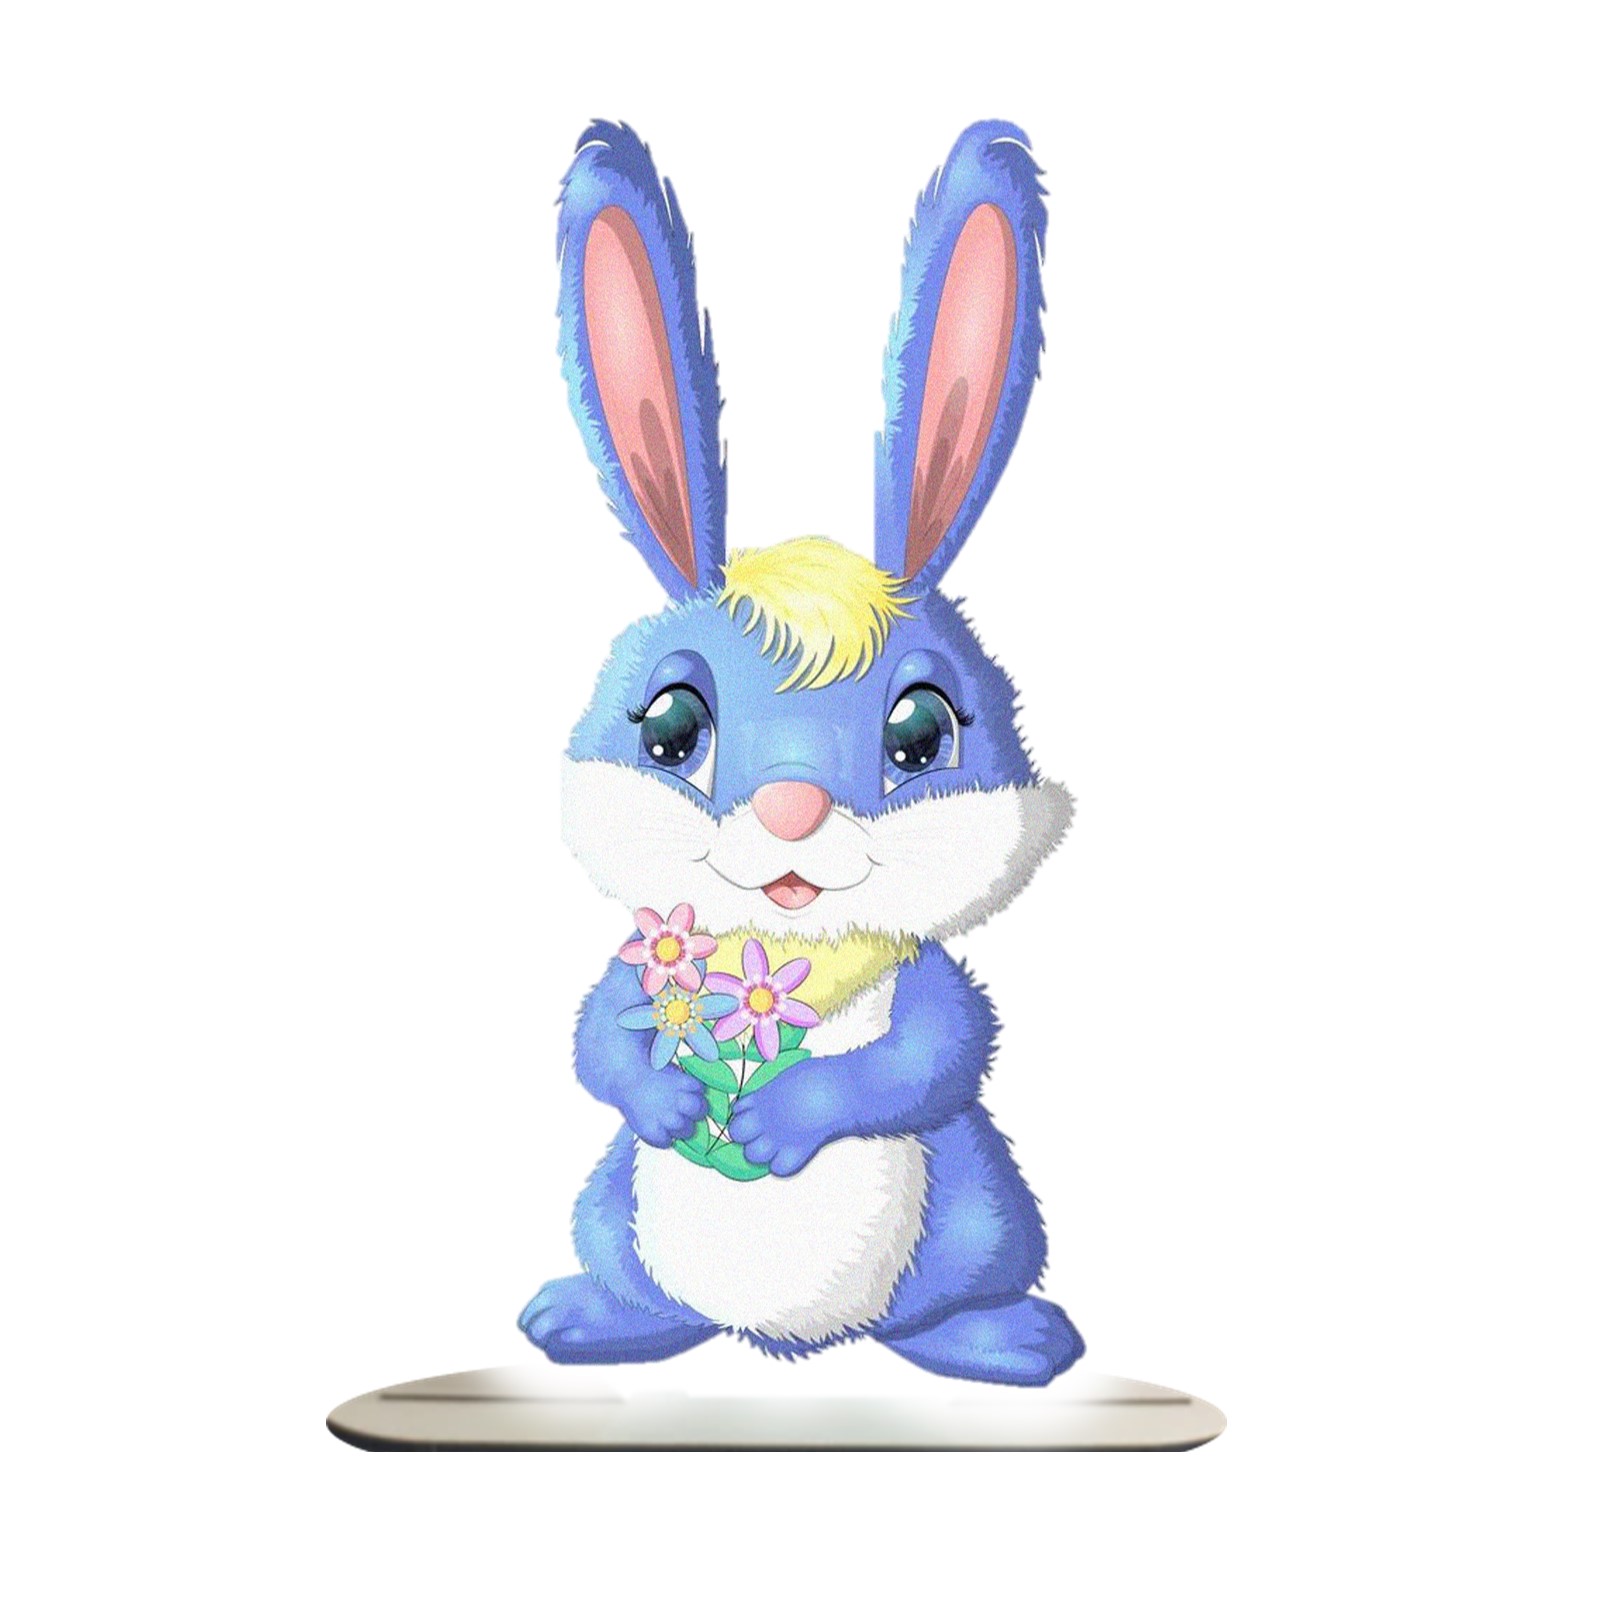 استند رومیزی تزیینی مدل خرگوش آبی با گل